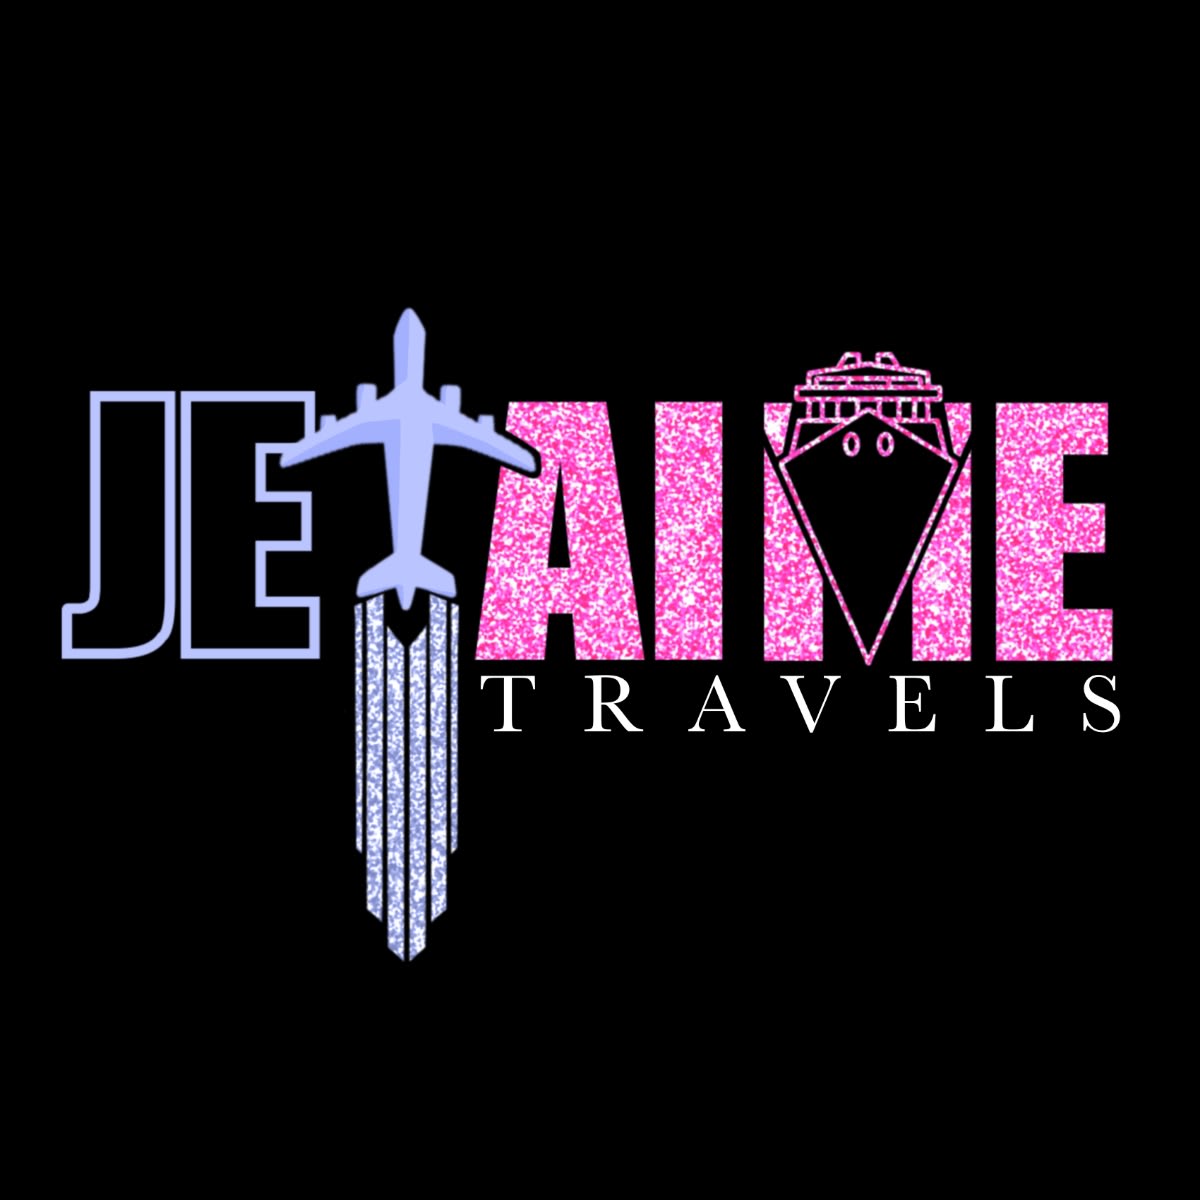 Jet'aime Travel's